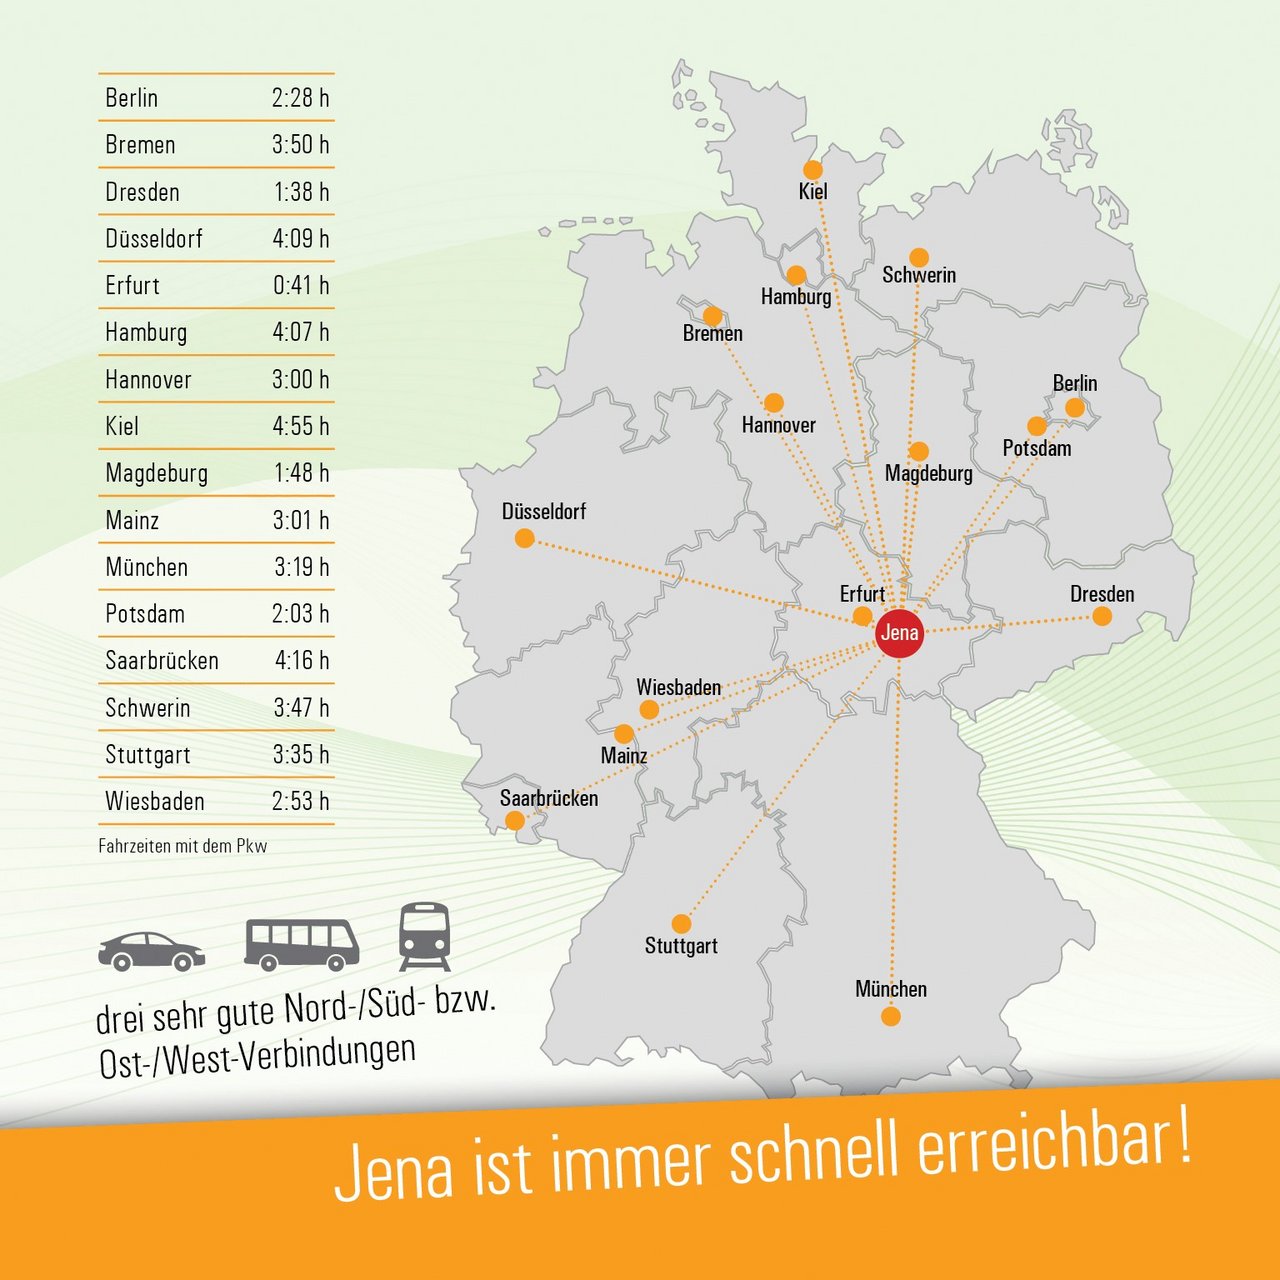 Deutschlandkarte mit Jena im Zentrum und Entfernungs- und Zeitangaben zur Anreise aus verschieden Orten